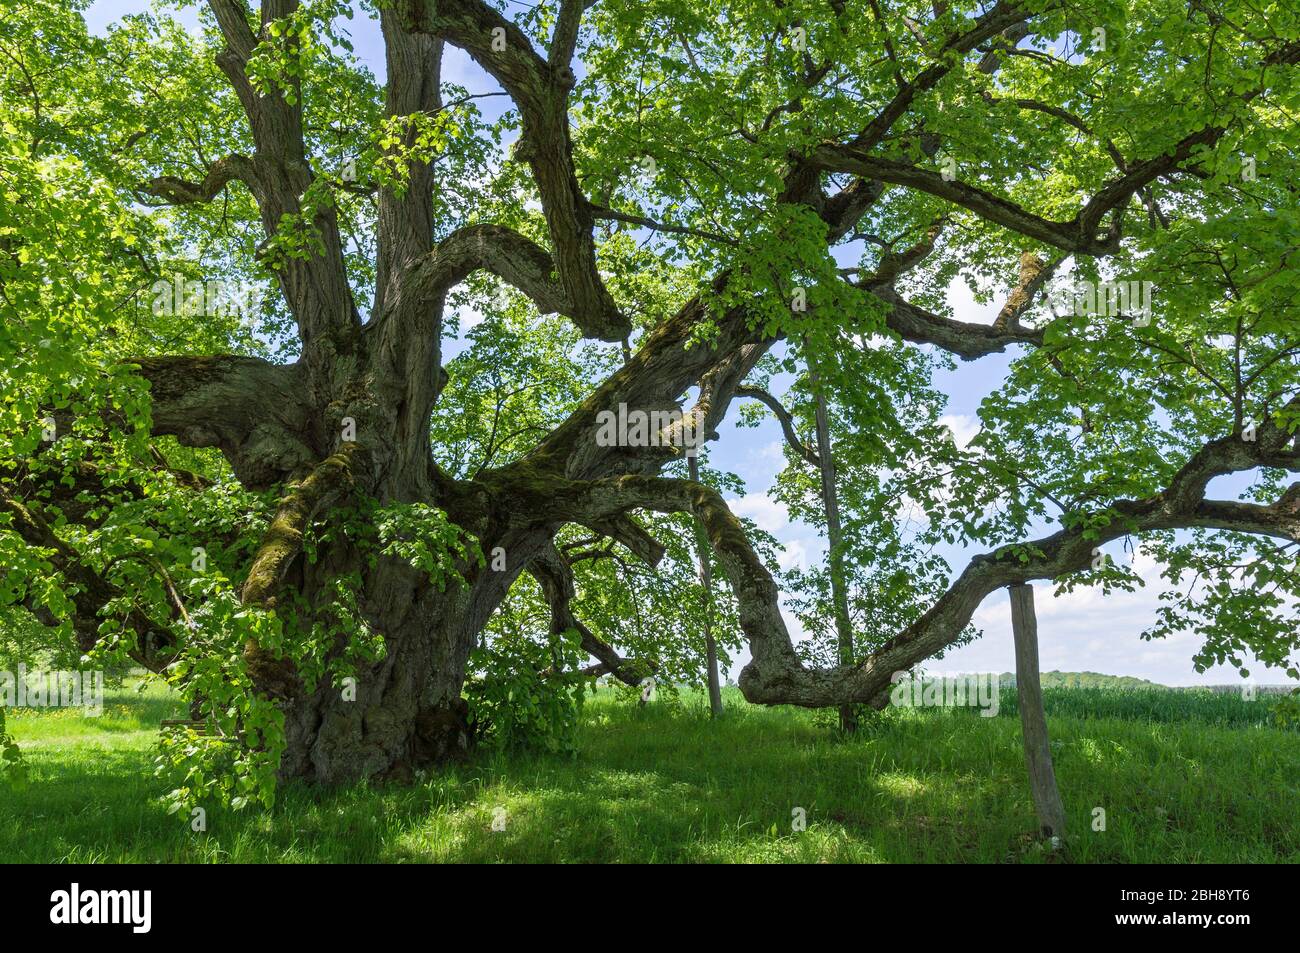 Deutschland, Baden-Württemberg, Bernstadt, die Walkstetter Linde, ein Baumveteran der 430 bis 500 Jahre alt ist. Winterlinde, Tilia cordata Stock Photo